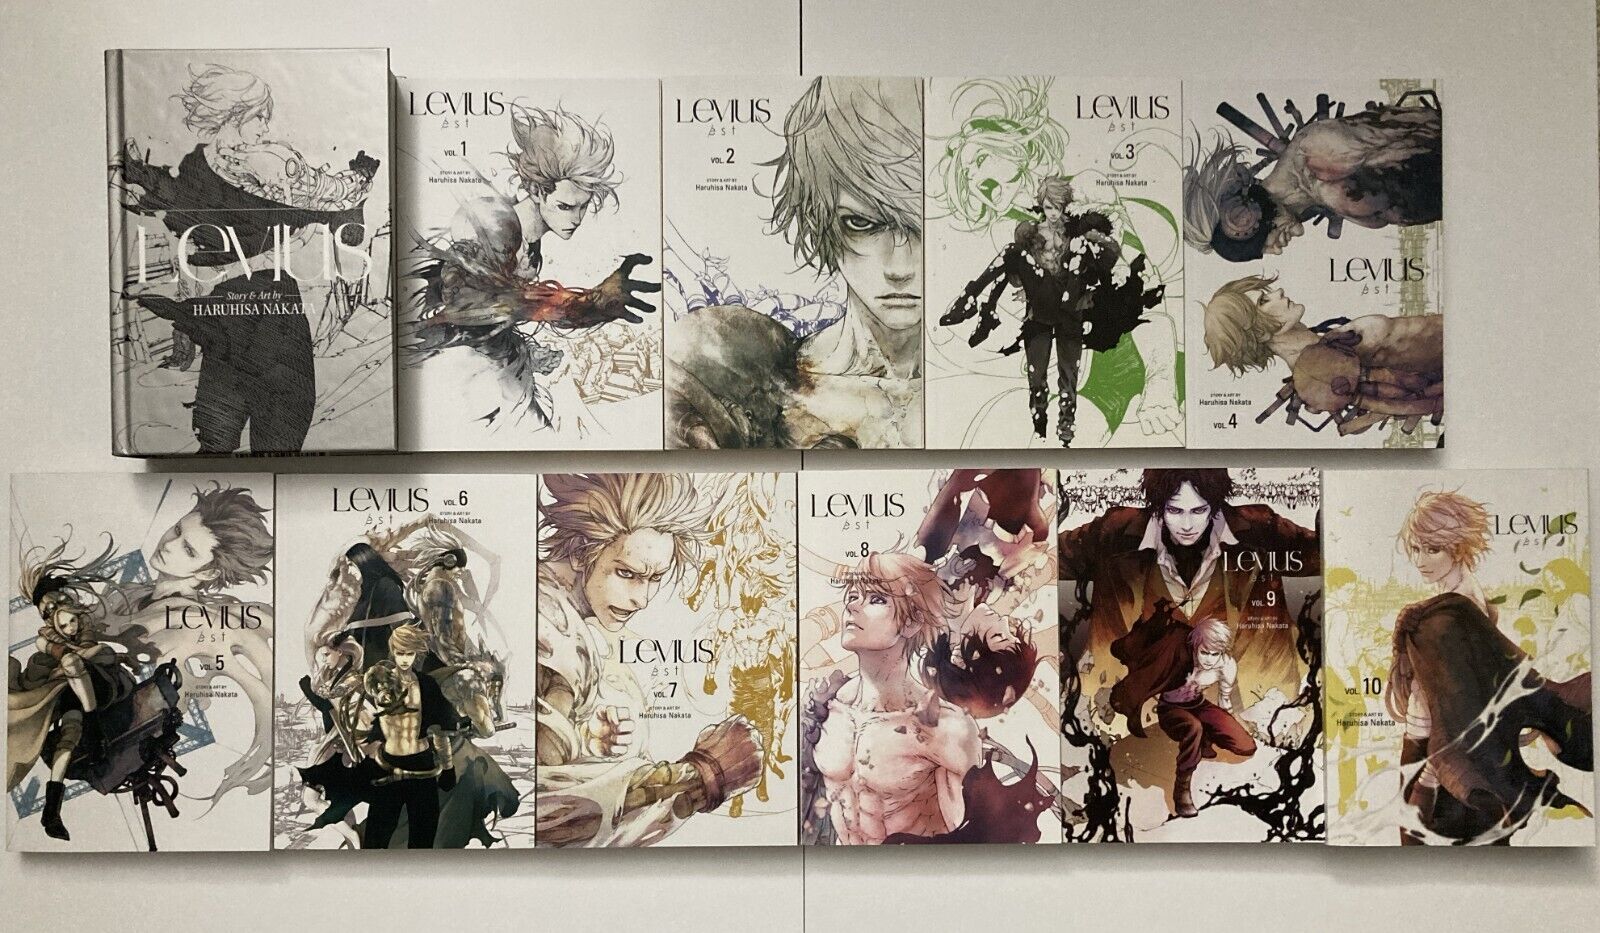 Levius Hardcover/Levius Est Manga Vol. 1 - 10 Complete Set English / 11 Books